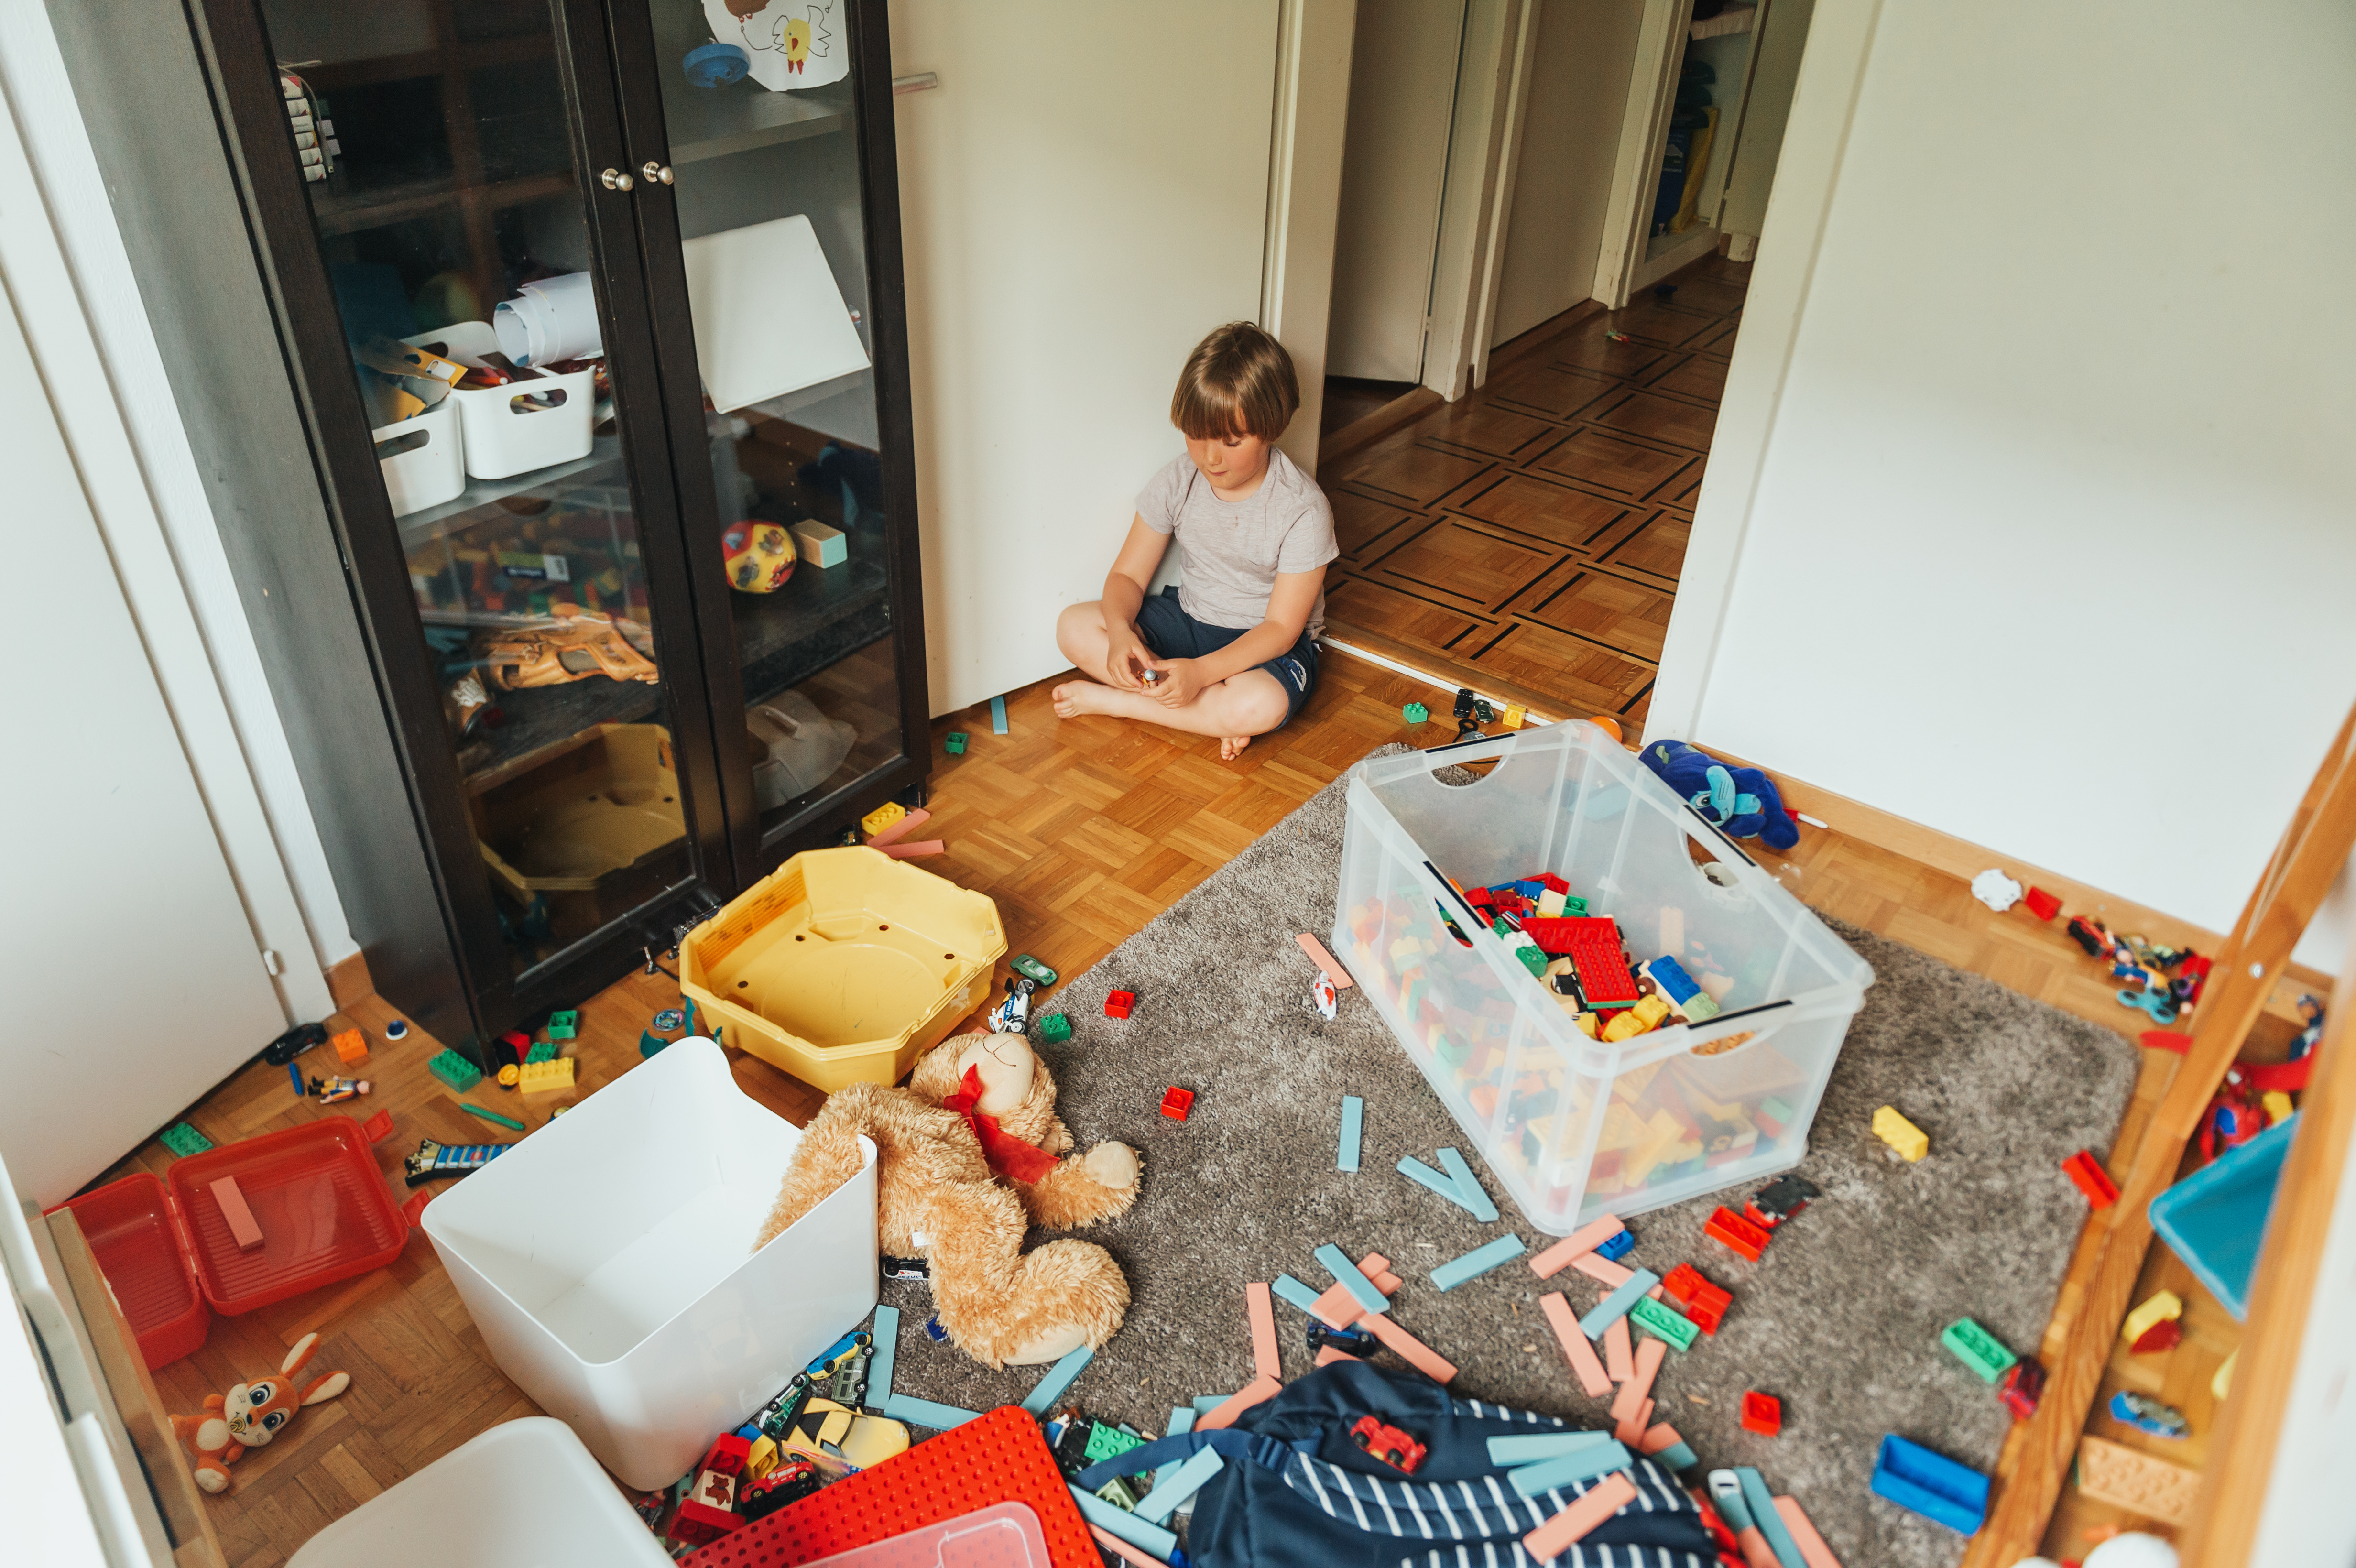 Un enfant assis dans une pièce en désordre | Source : Shutterstock